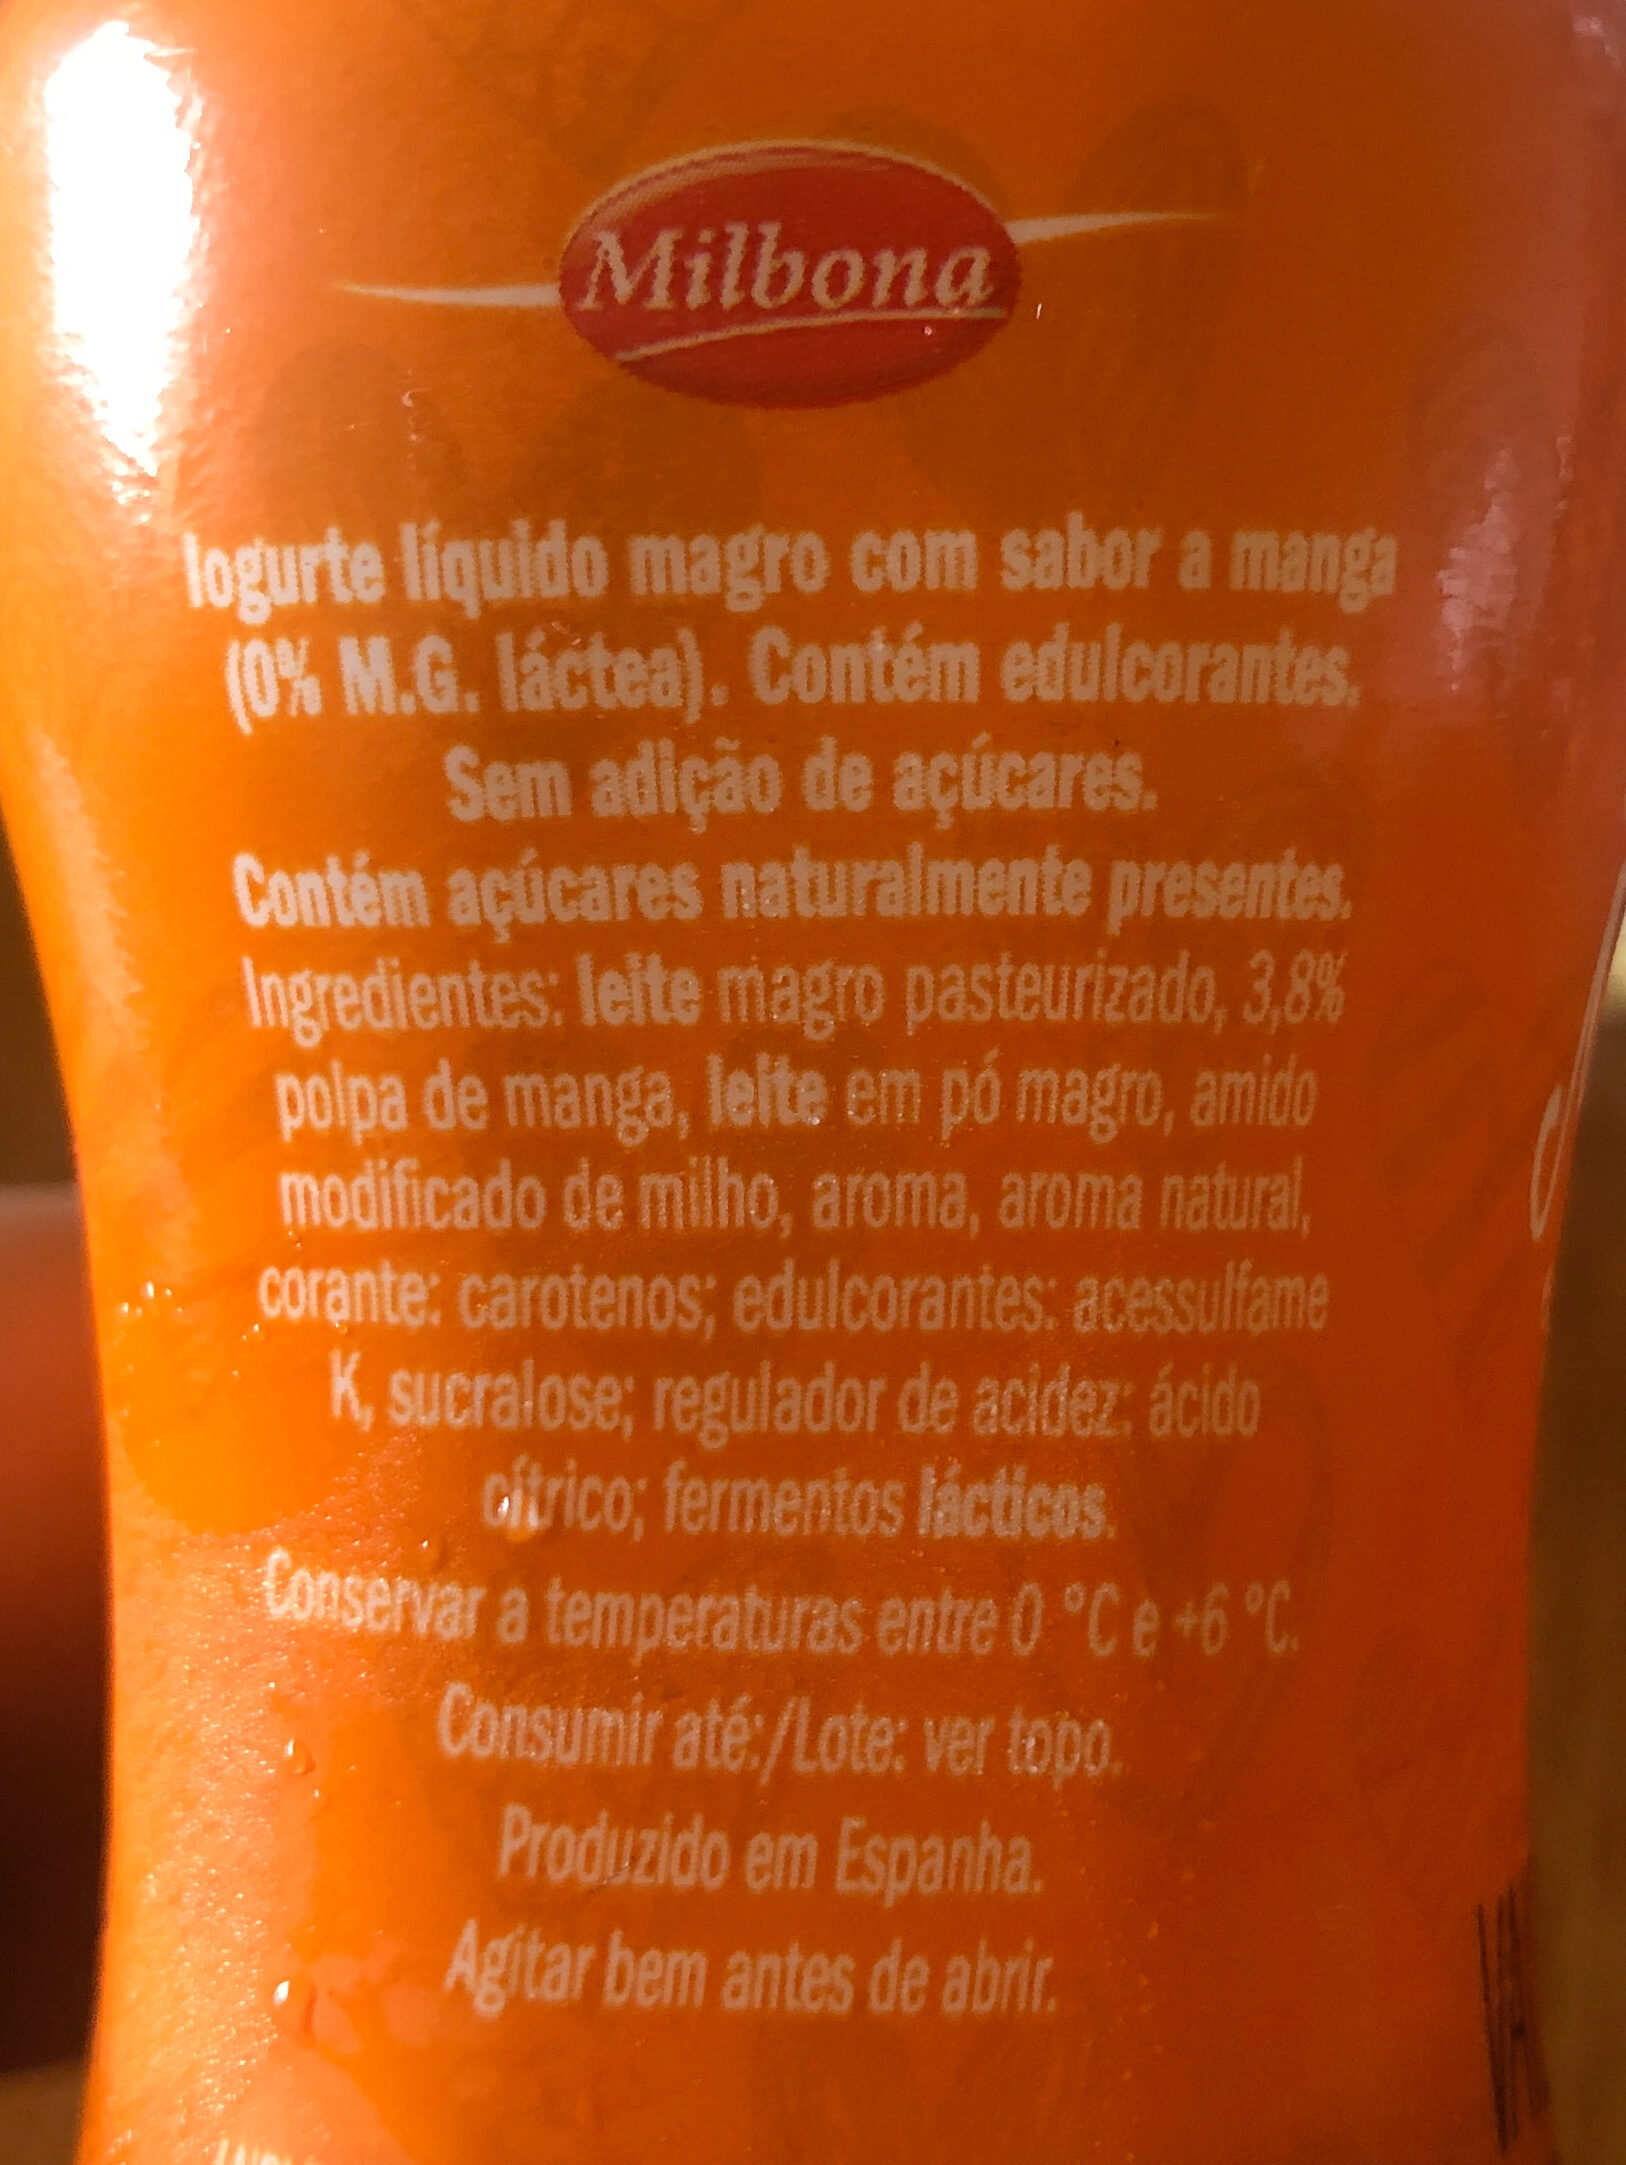 Yogur Milbona Magro - Ingredients - pt